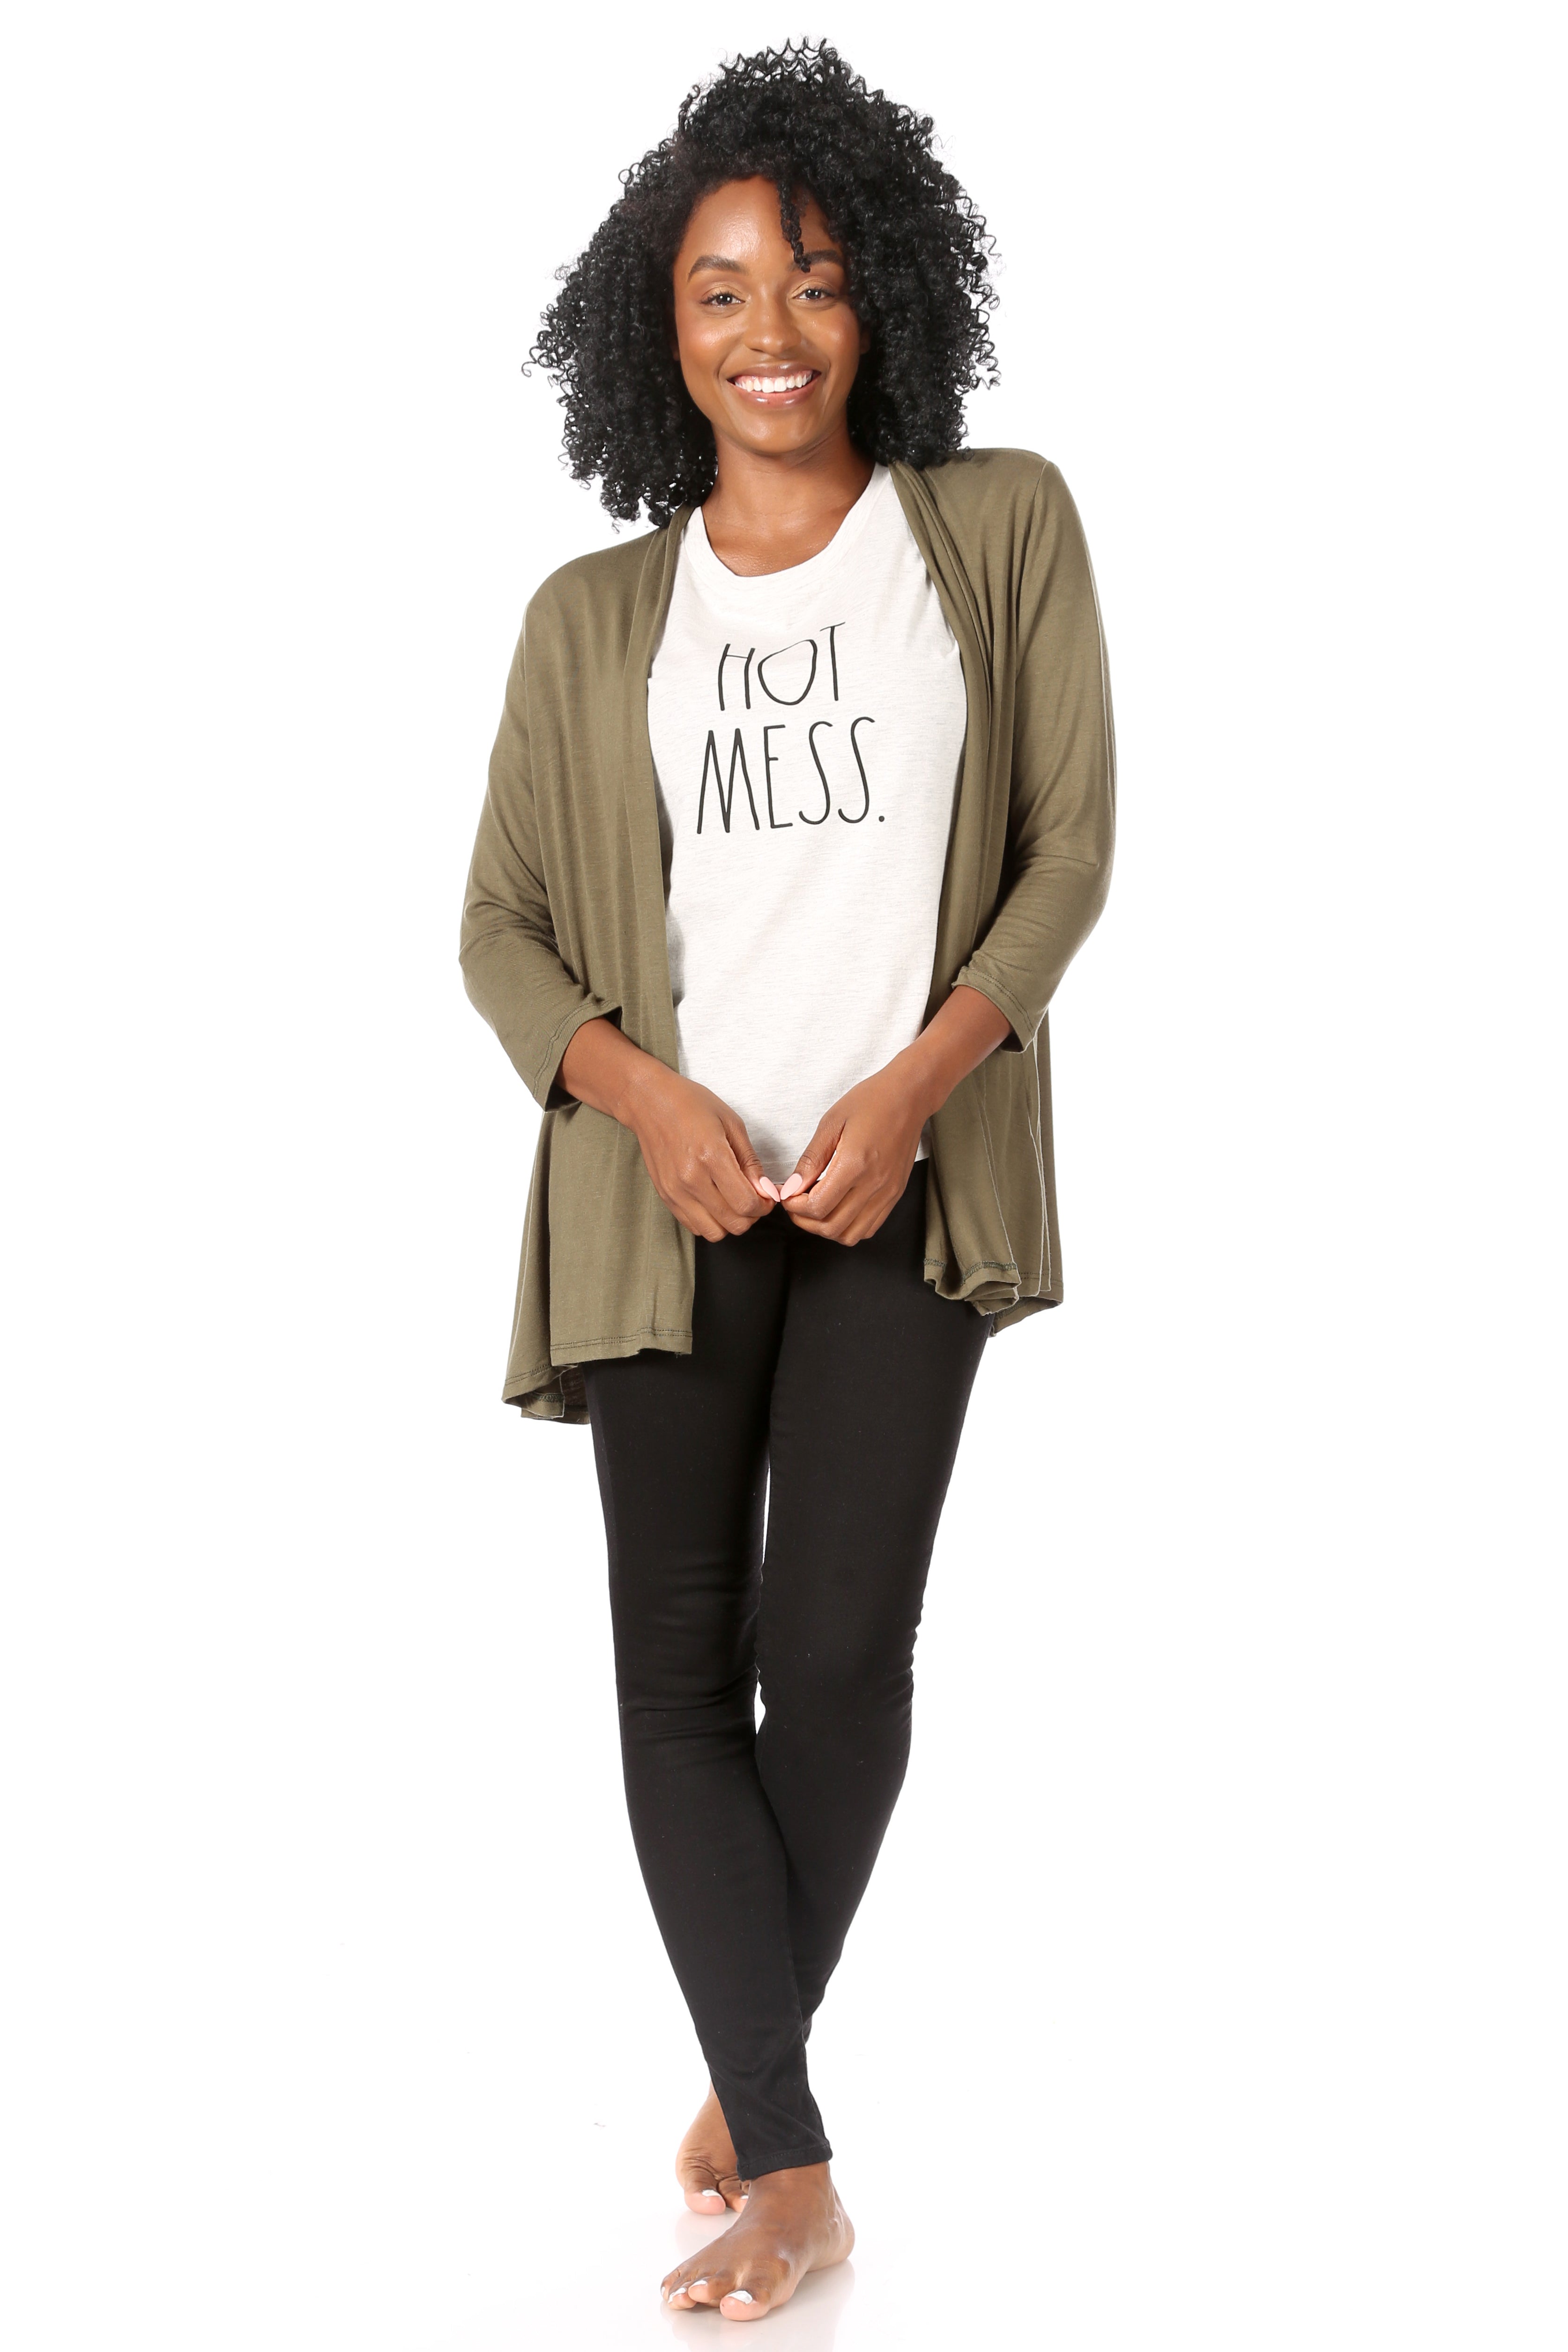 Women's "HOT MESS" Short Sleeve Shirttail Hem T-Shirt - Rae Dunn Wear